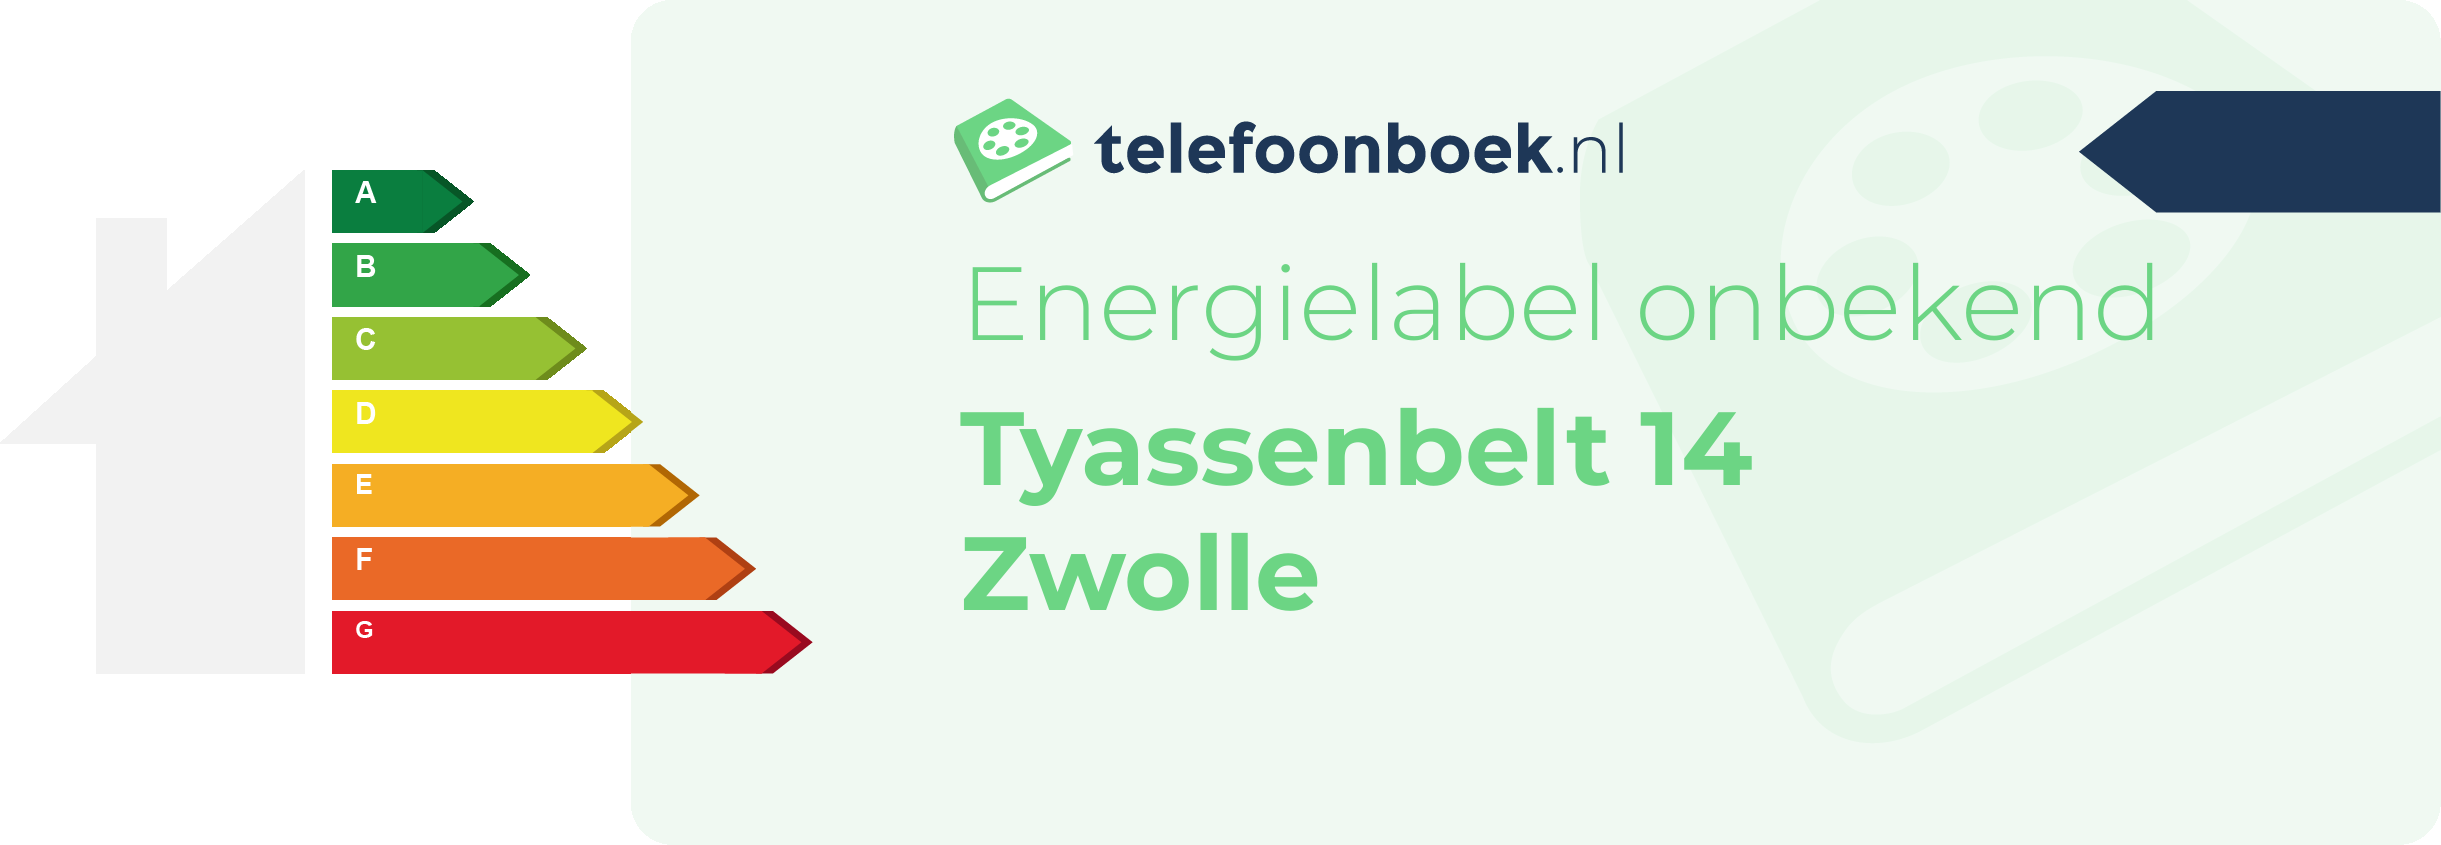 Energielabel Tyassenbelt 14 Zwolle